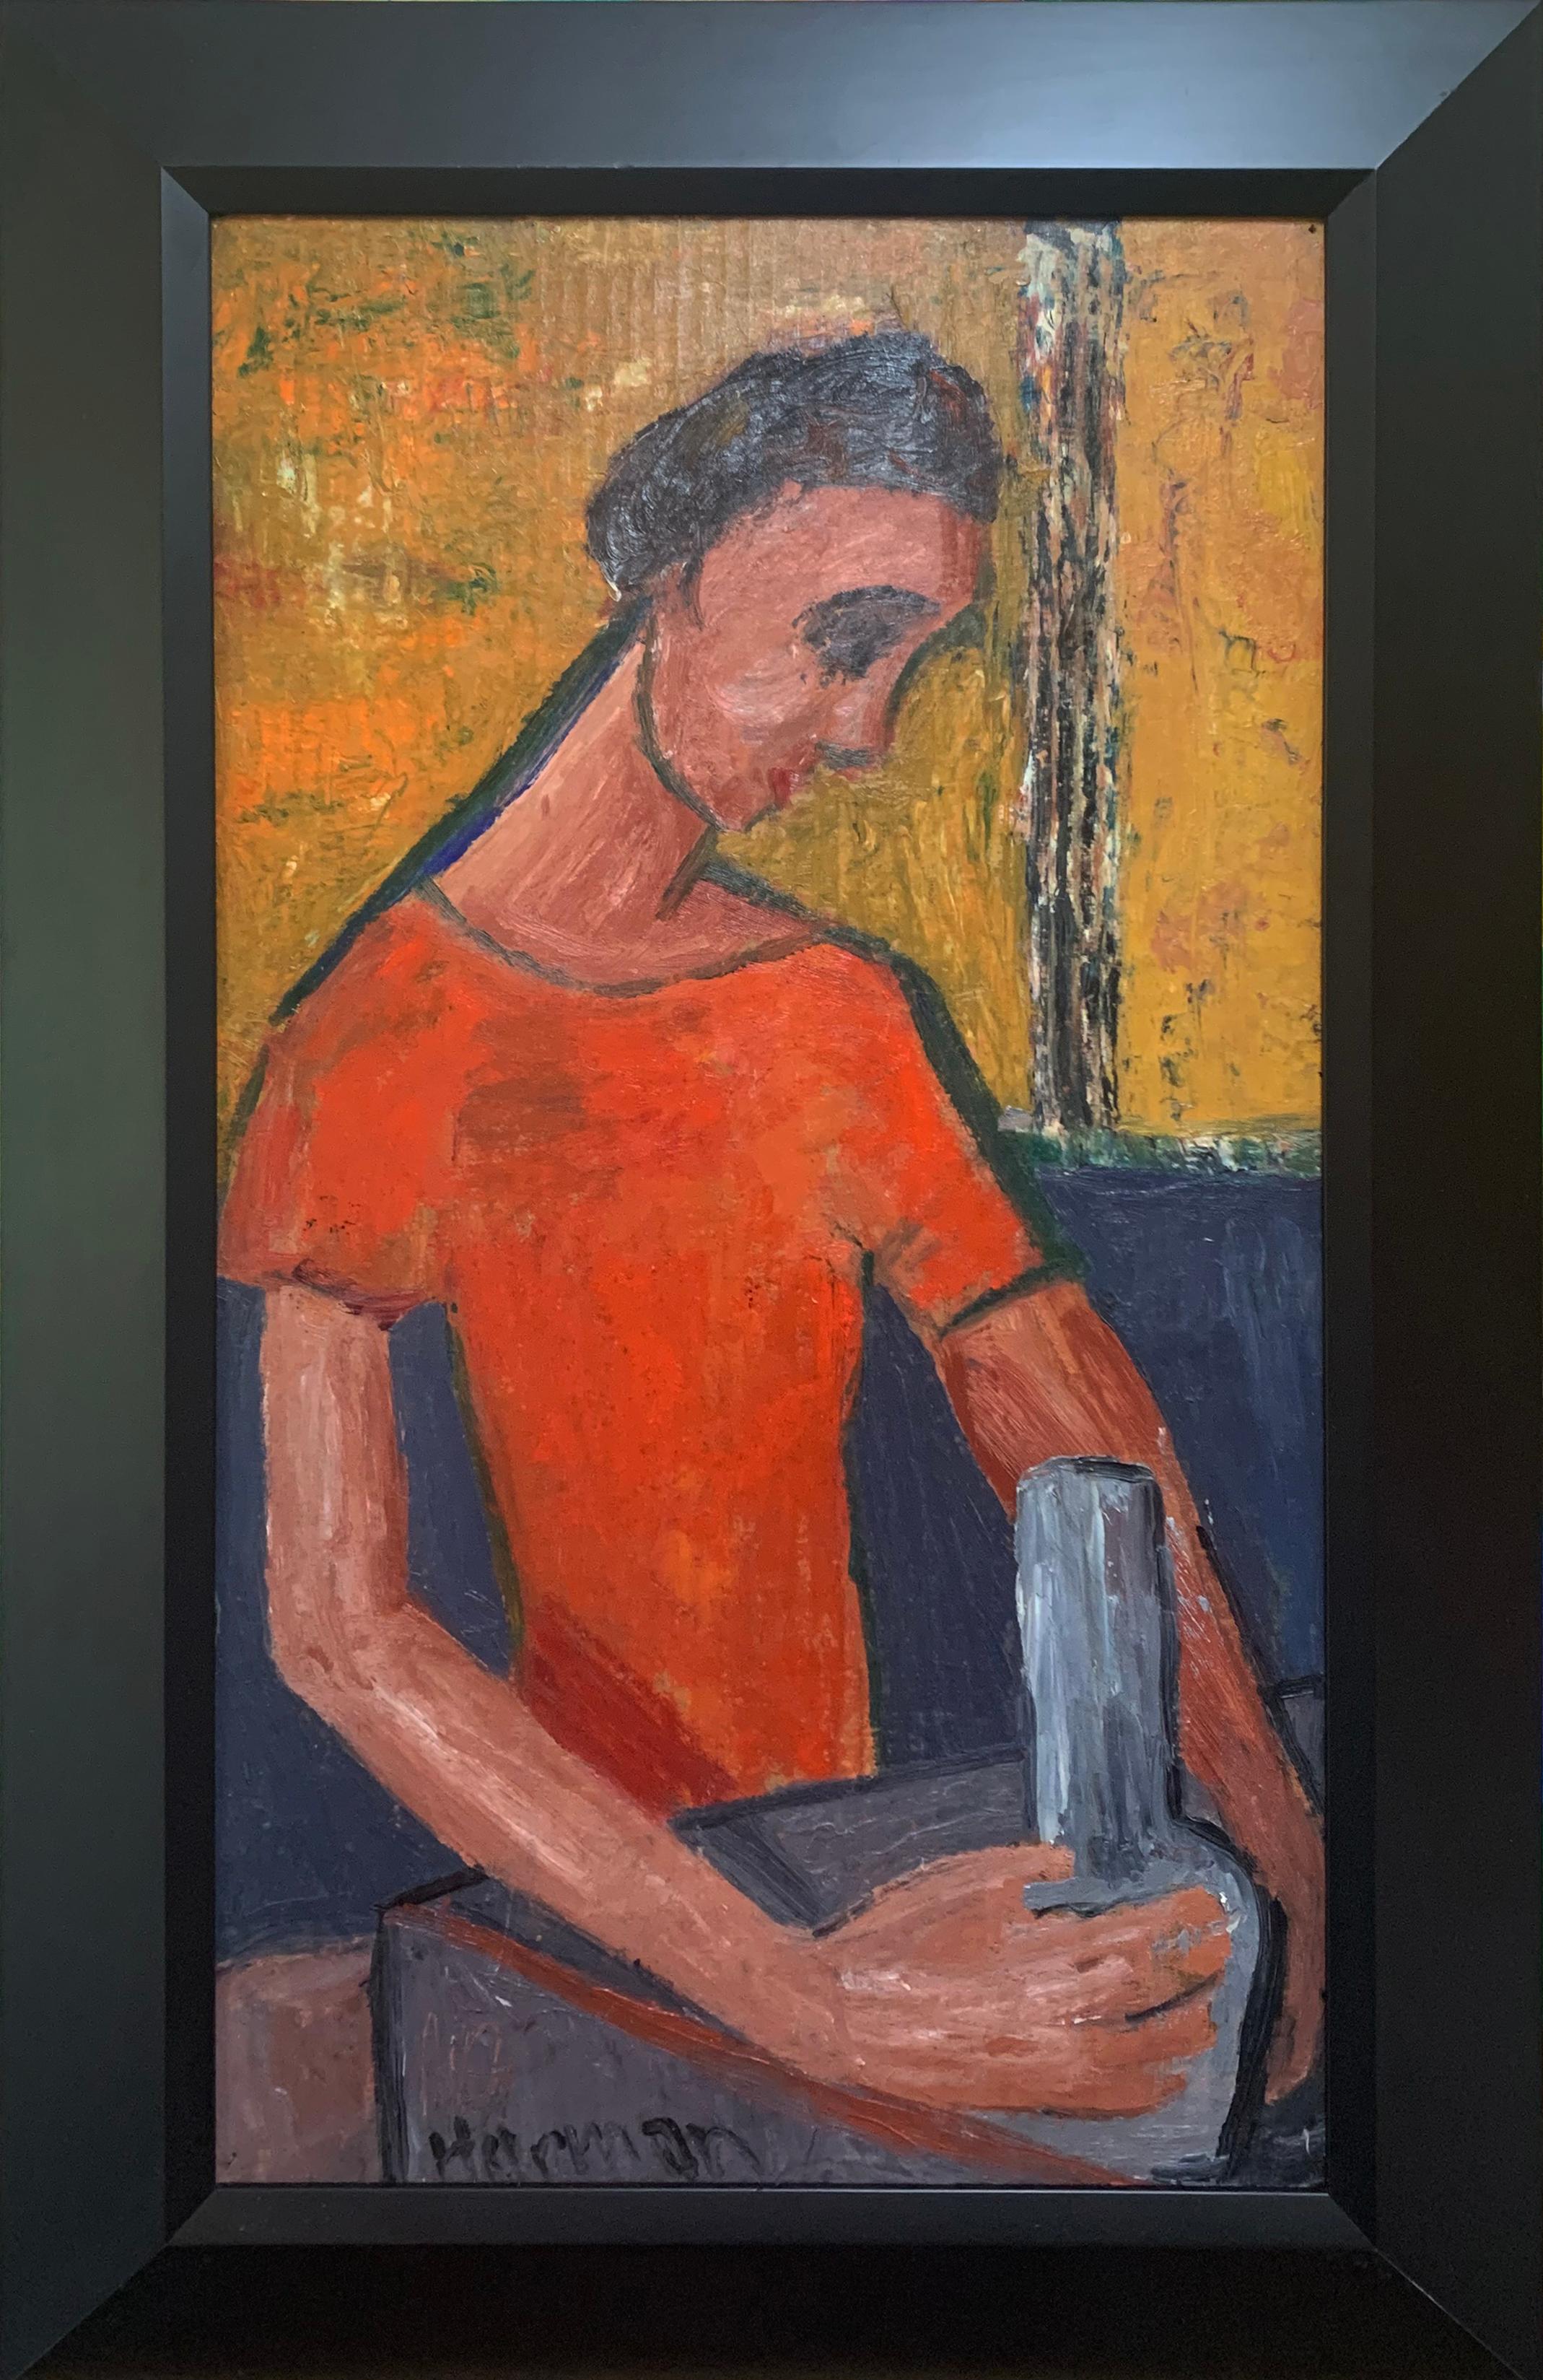 El Alfarero, retrato expresionista de un joven por un artista de Filadelfia